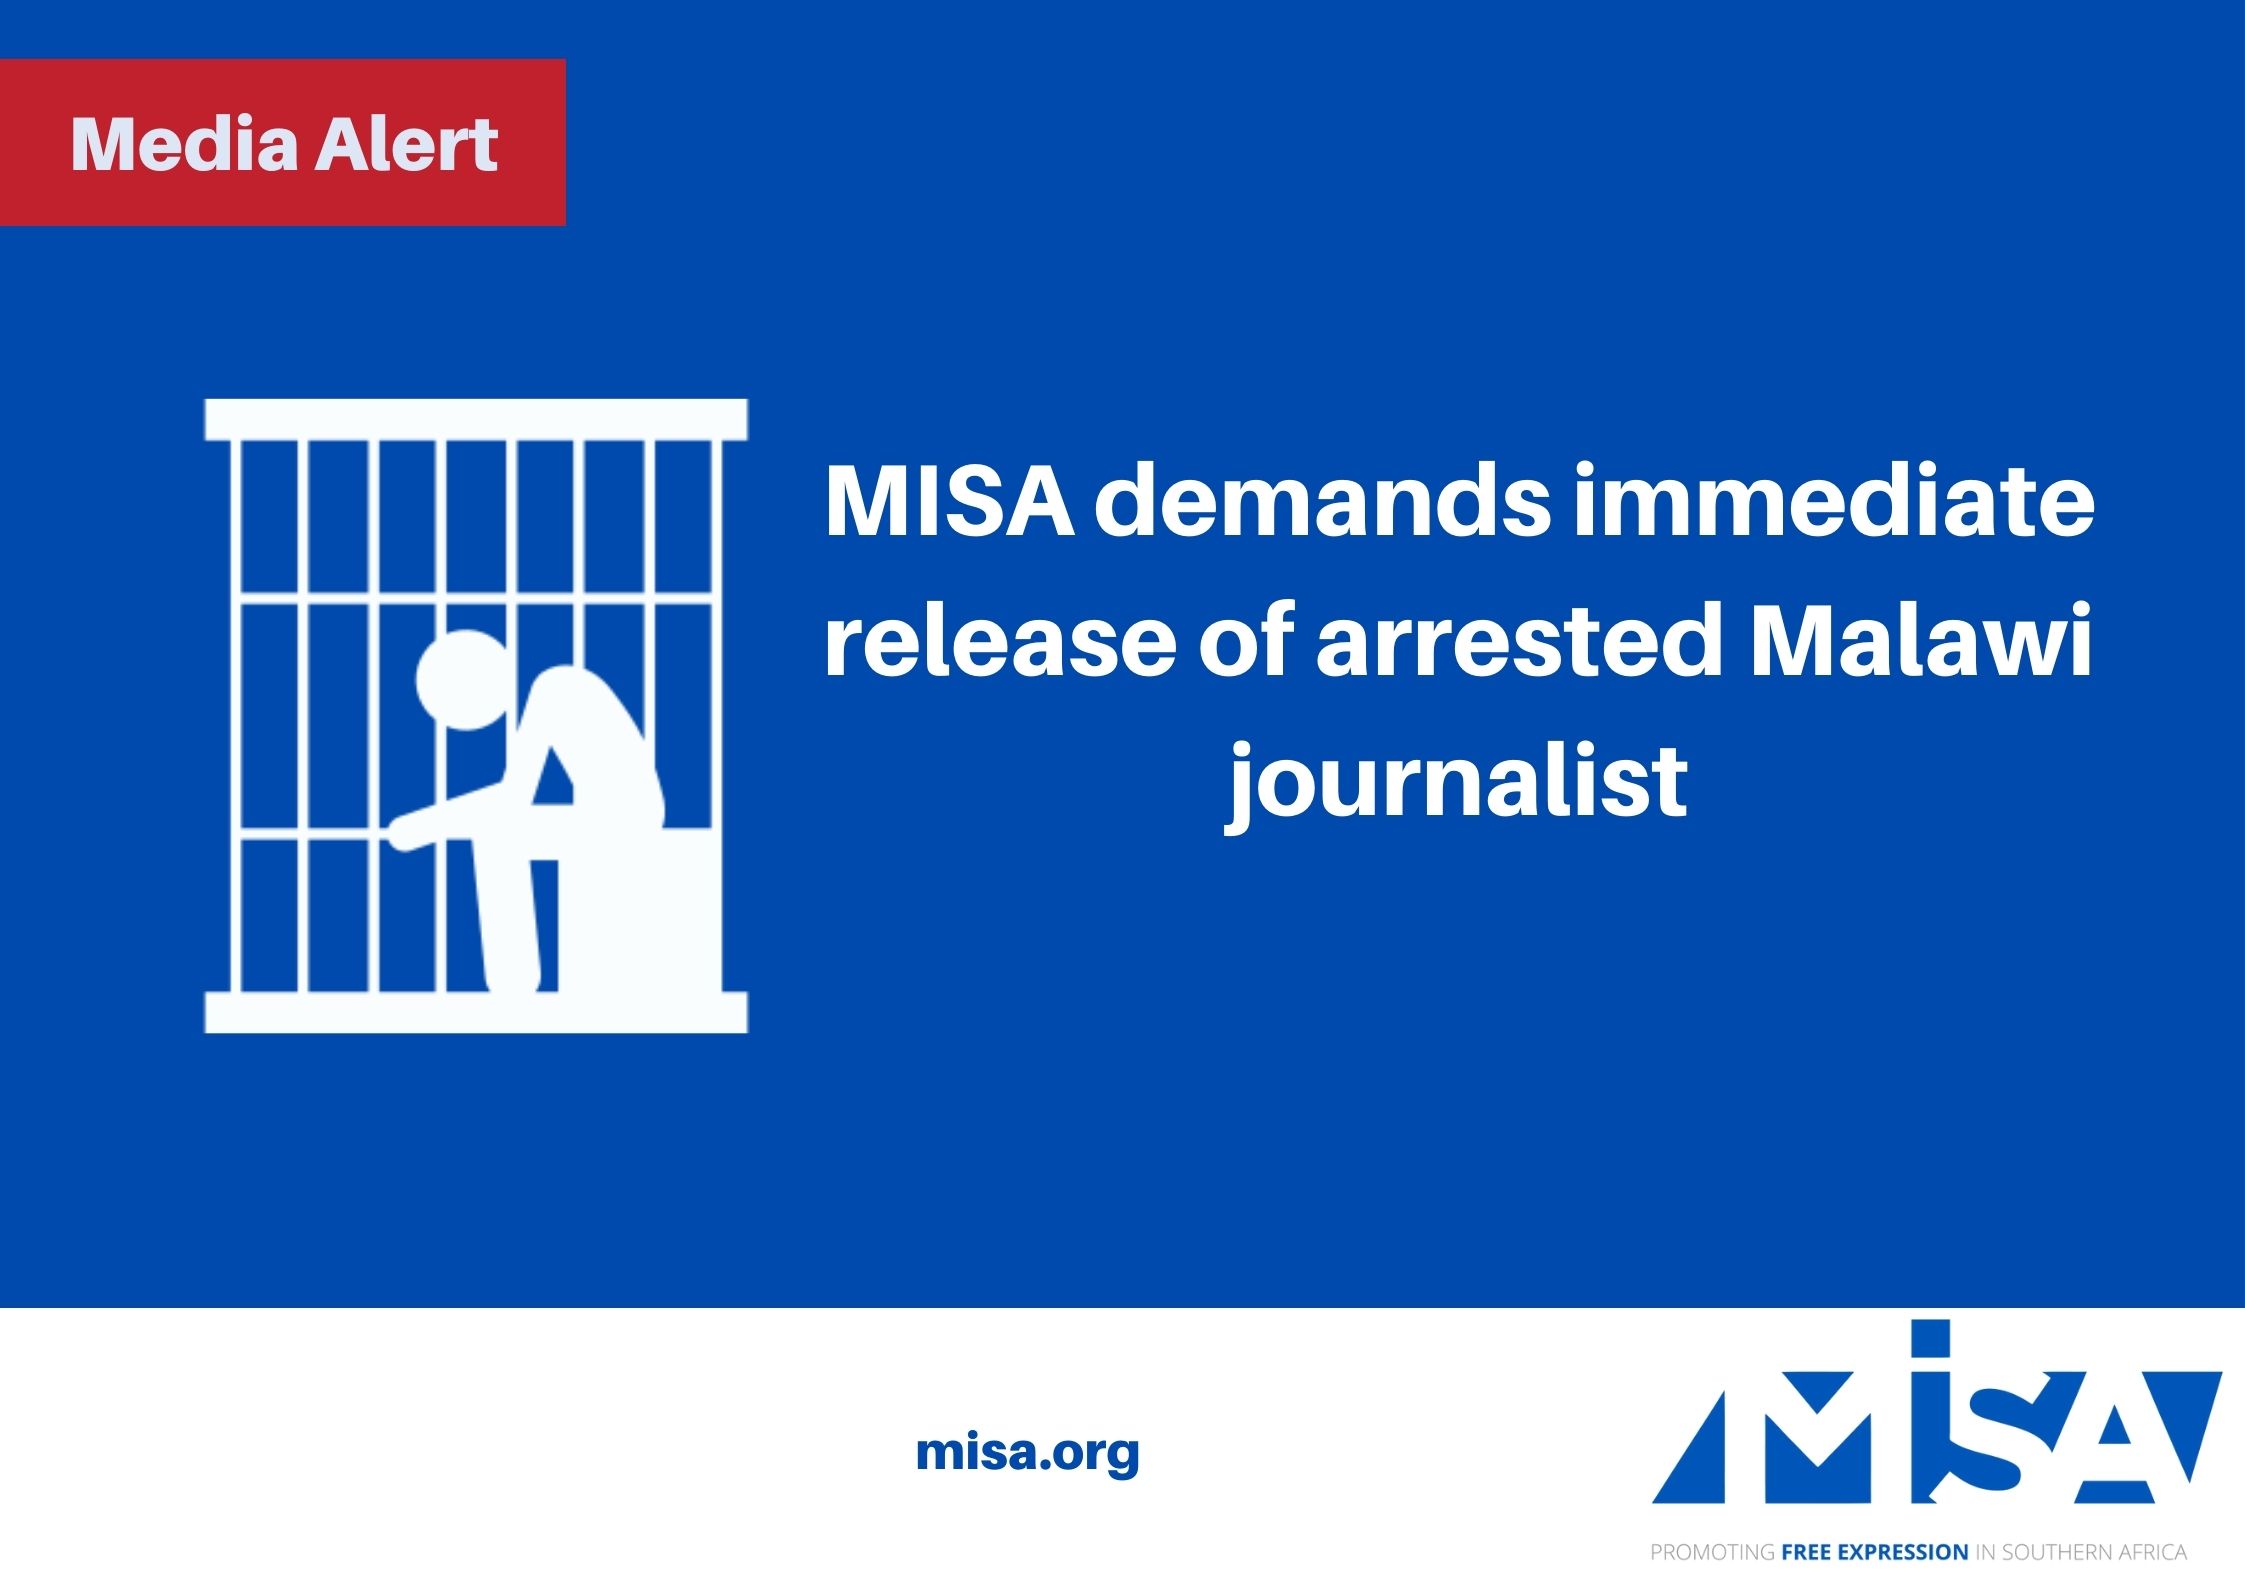 MISA demands immediate release of arrested Malawi journalist